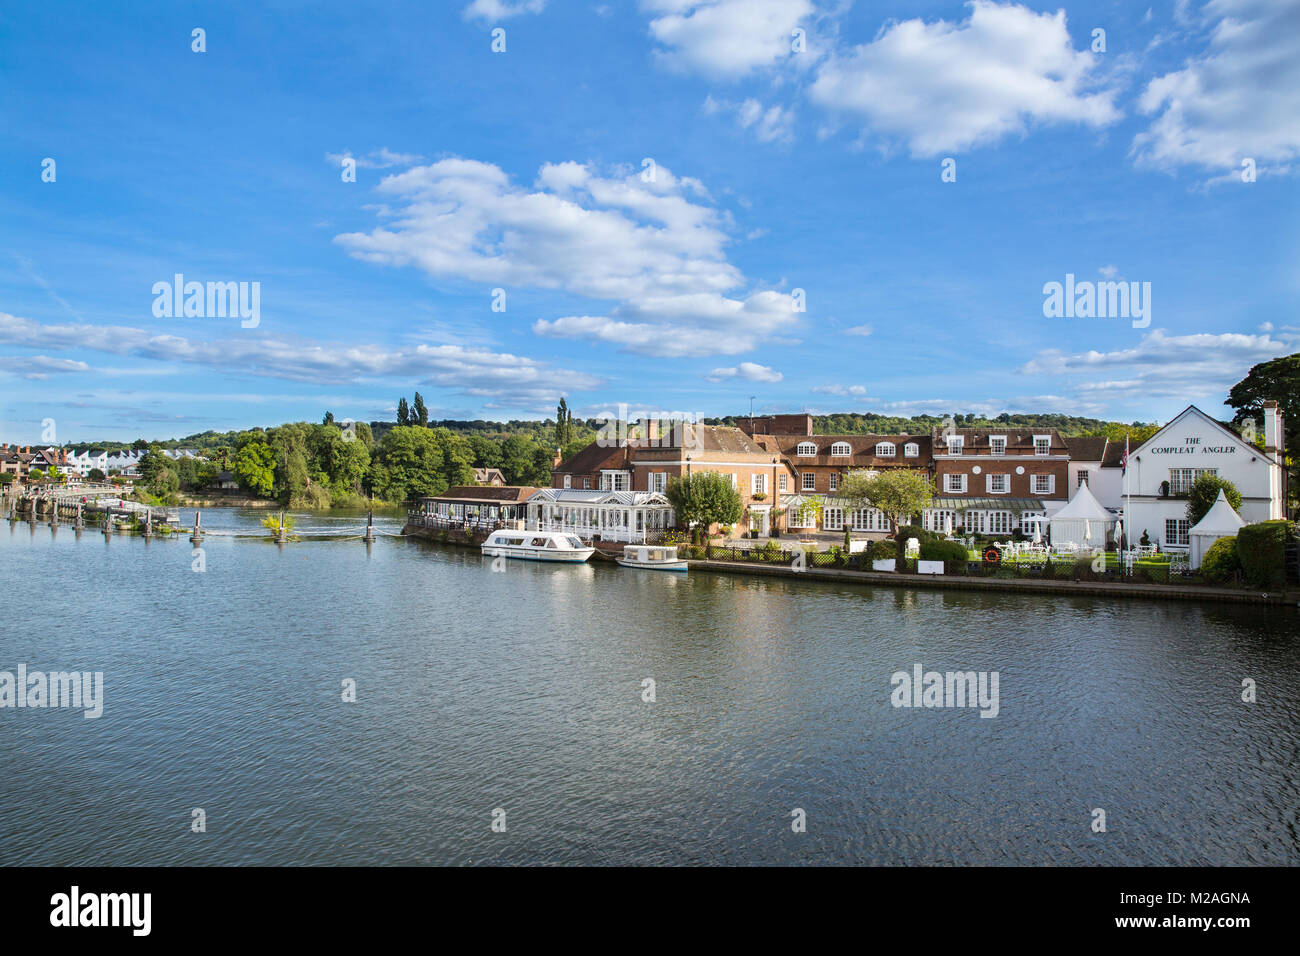 Vue panoramique de la rivière Thames et waterfront hotel, Marlow, Buckinghamshire, UK Banque D'Images